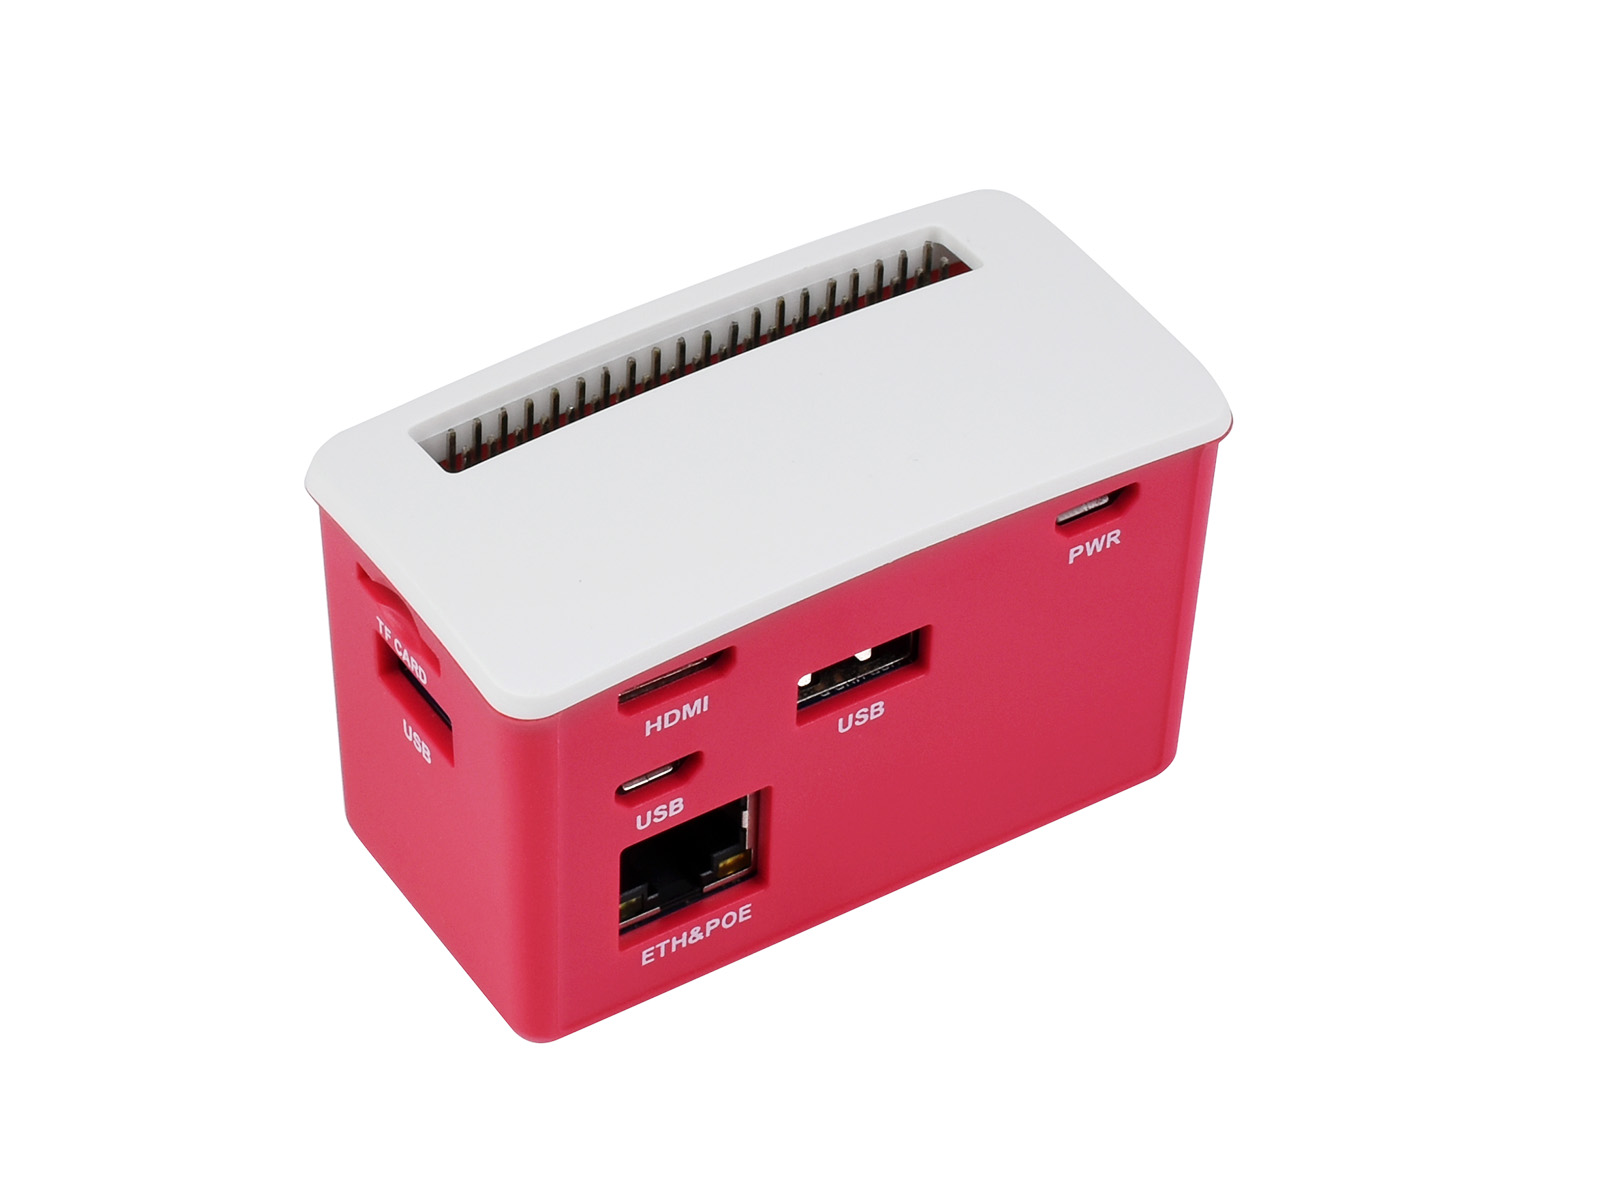 树莓派zero多功能外壳套件 PoE以太网供电3路USB HUB扩展板集线器